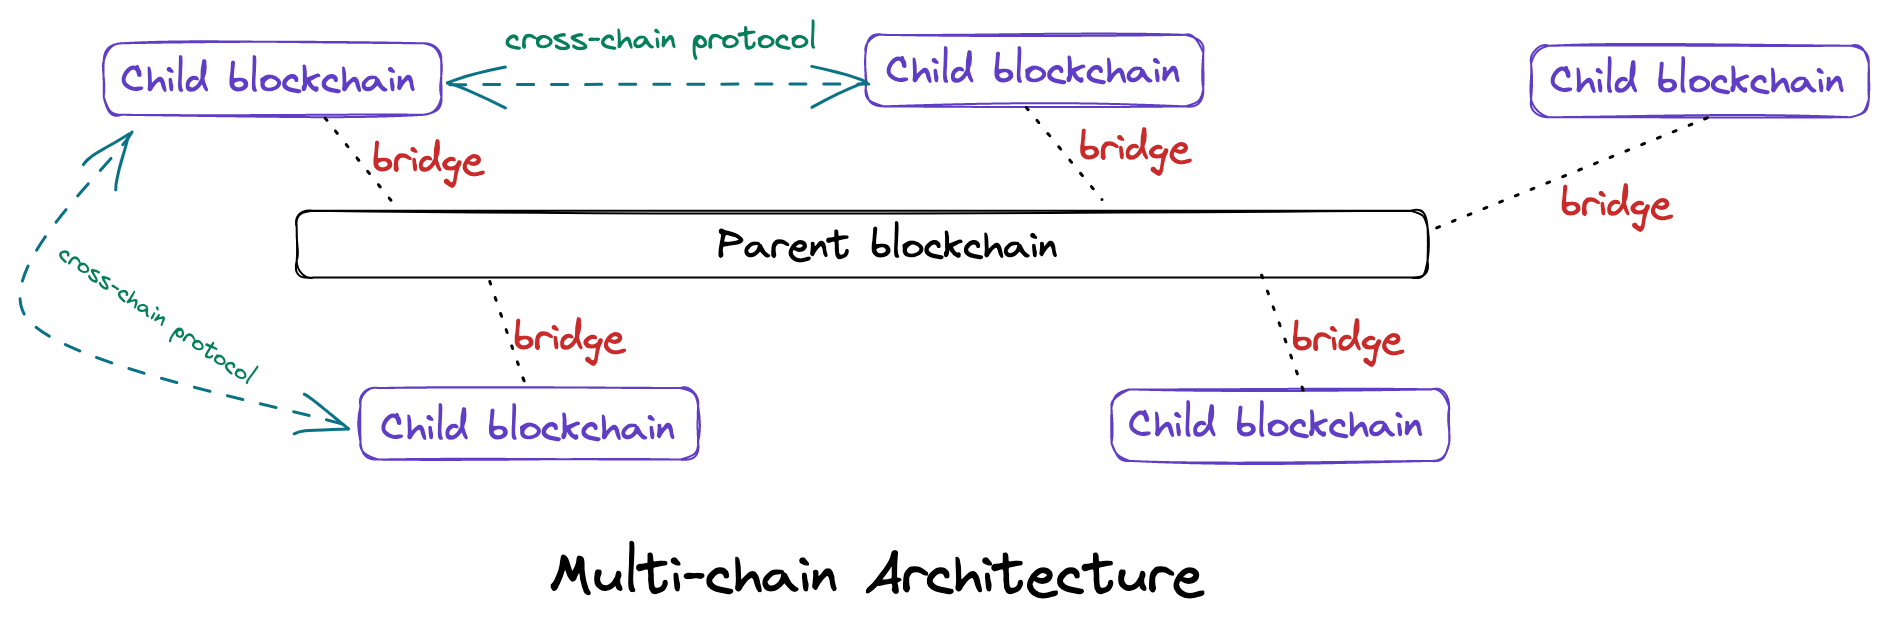 Multi-chain Architecture